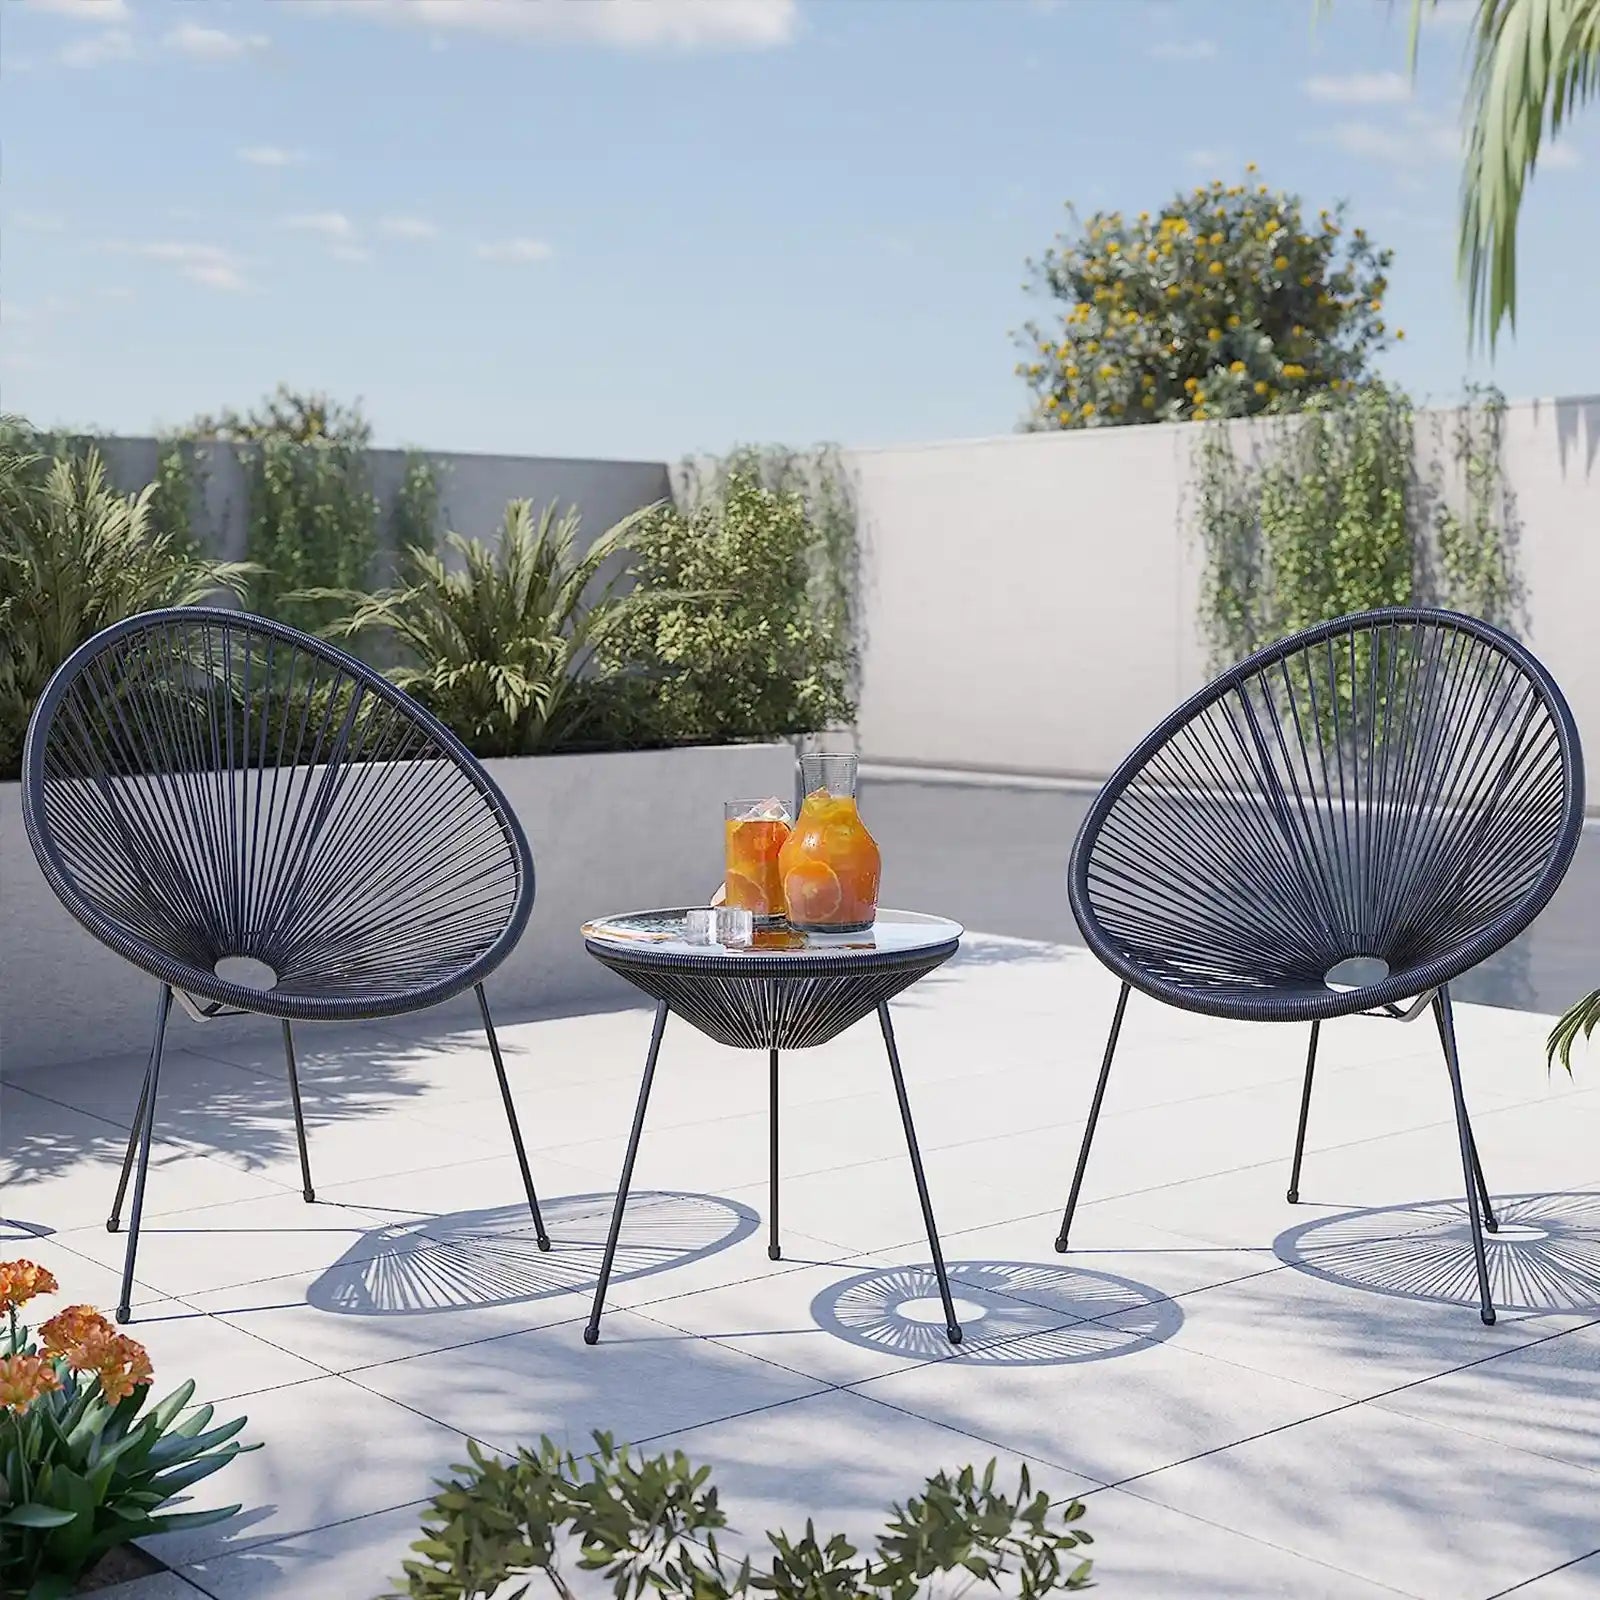 Juego de bistró de patio moderno de ratán de 3 piezas con sillas redondas y mesa decorativa con tapa de vidrio, muebles de mimbre para exteriores para patio o porche